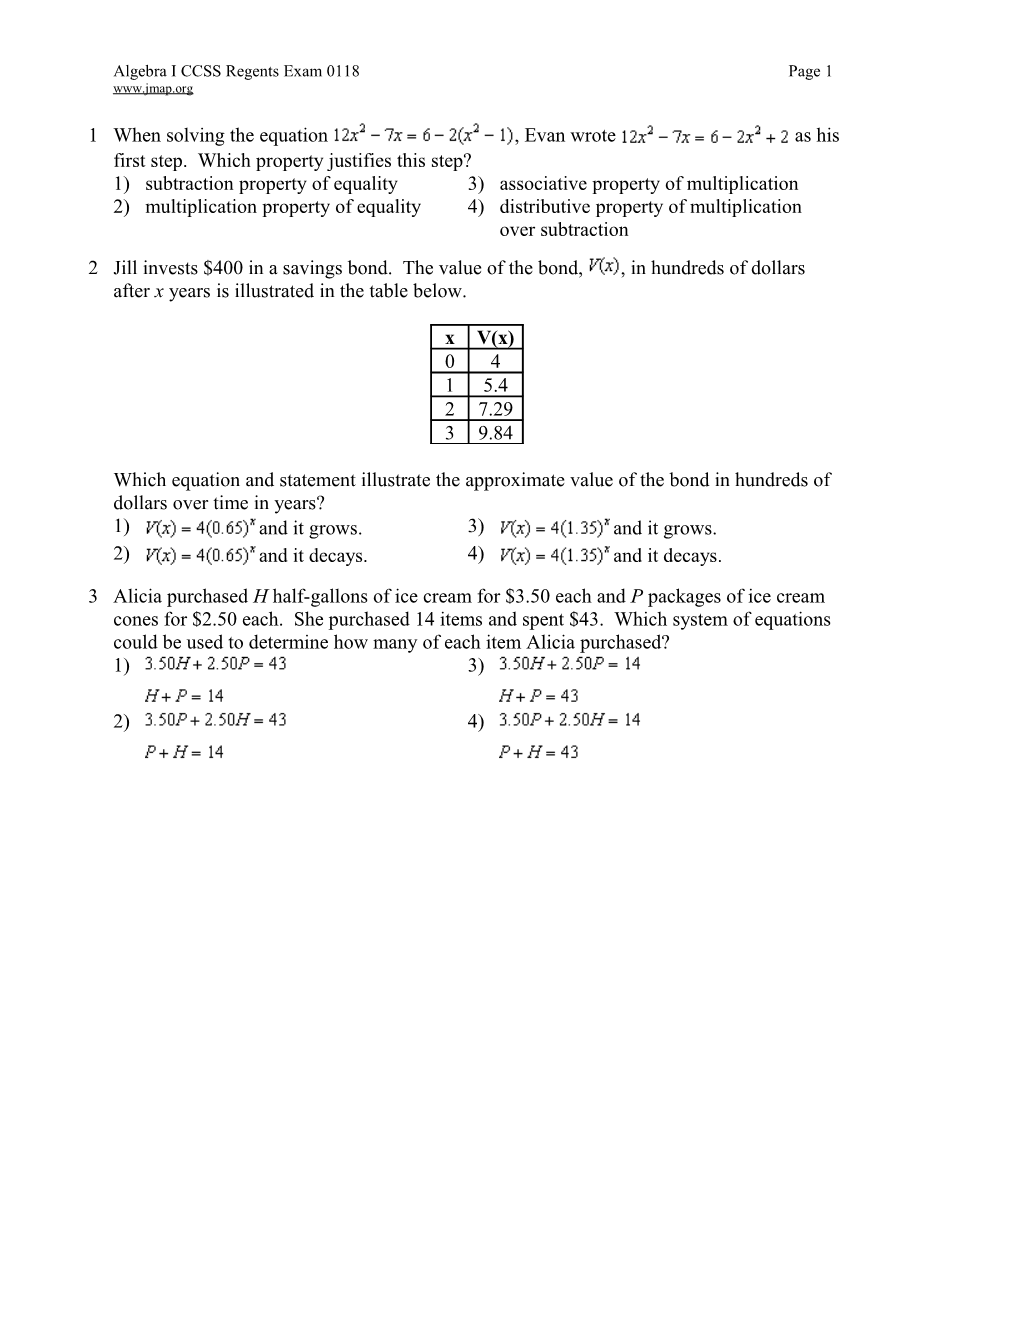 Algebra ICCSS Regents Exam 0118Page 1